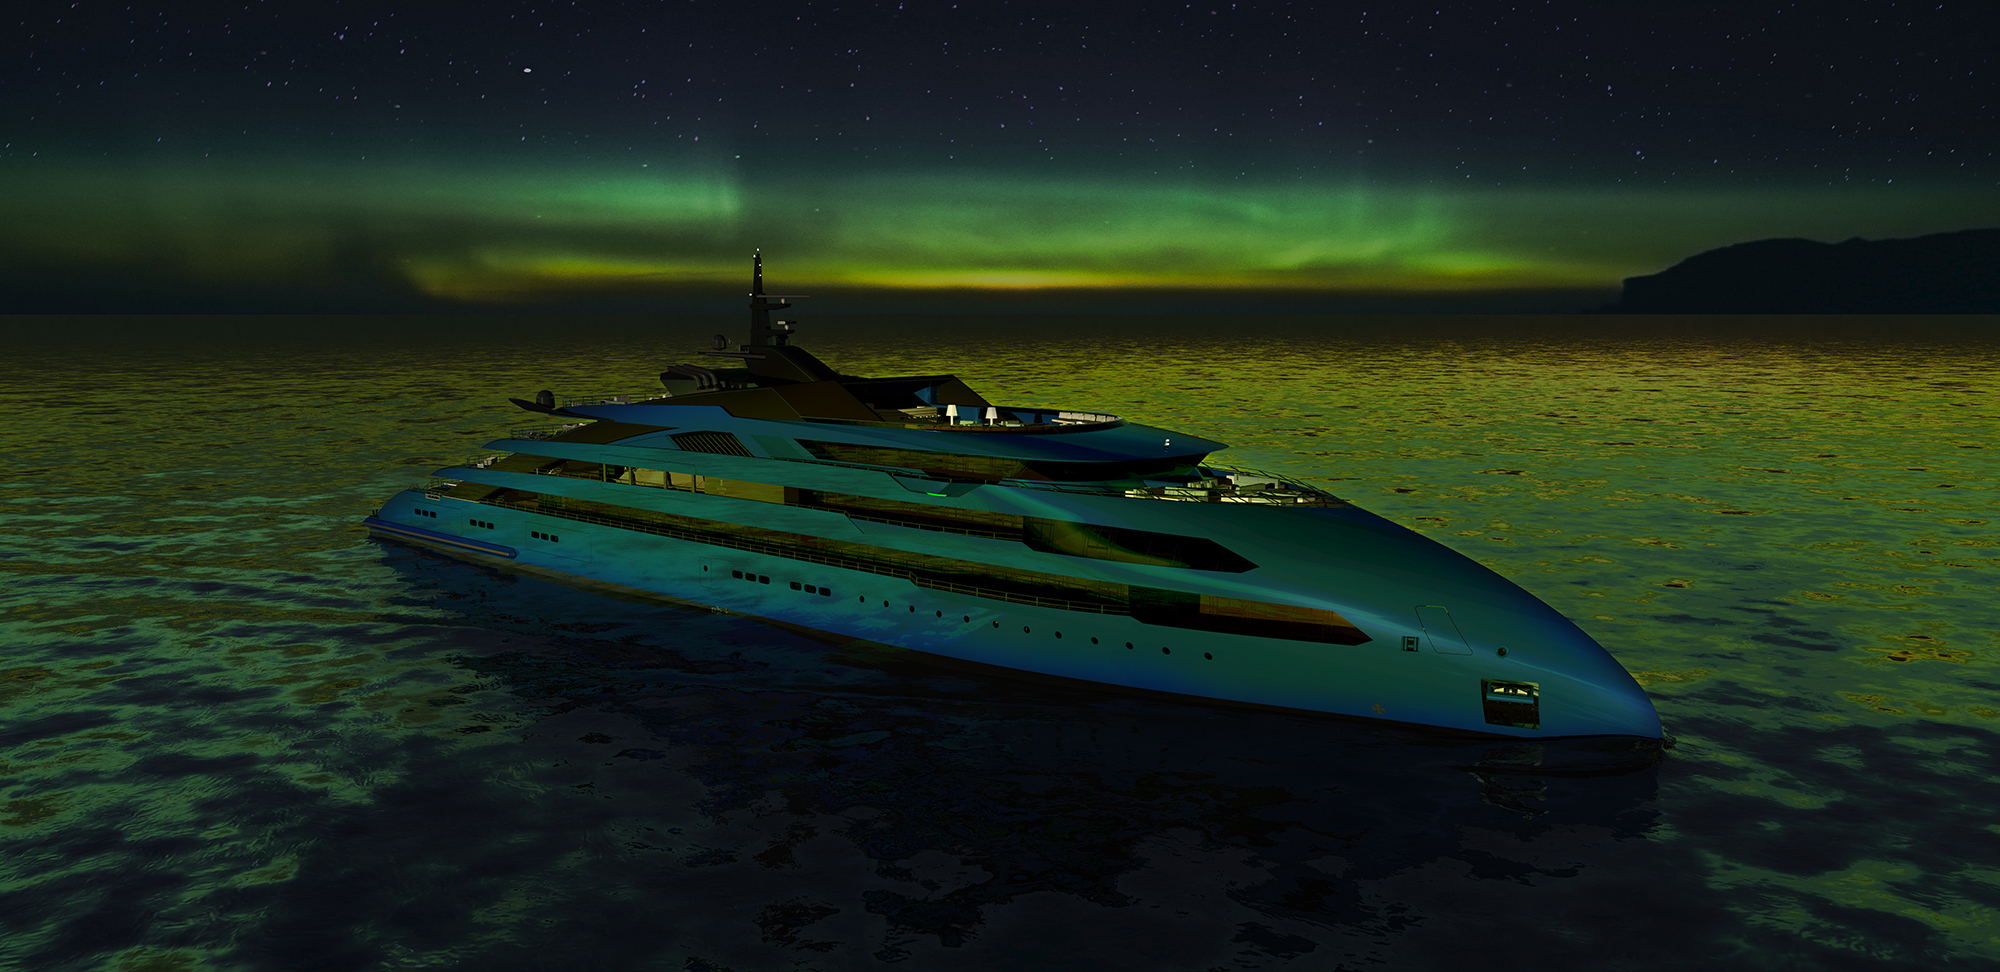 An ULSTEIN CX123 yacht under the Aurora Borealis.